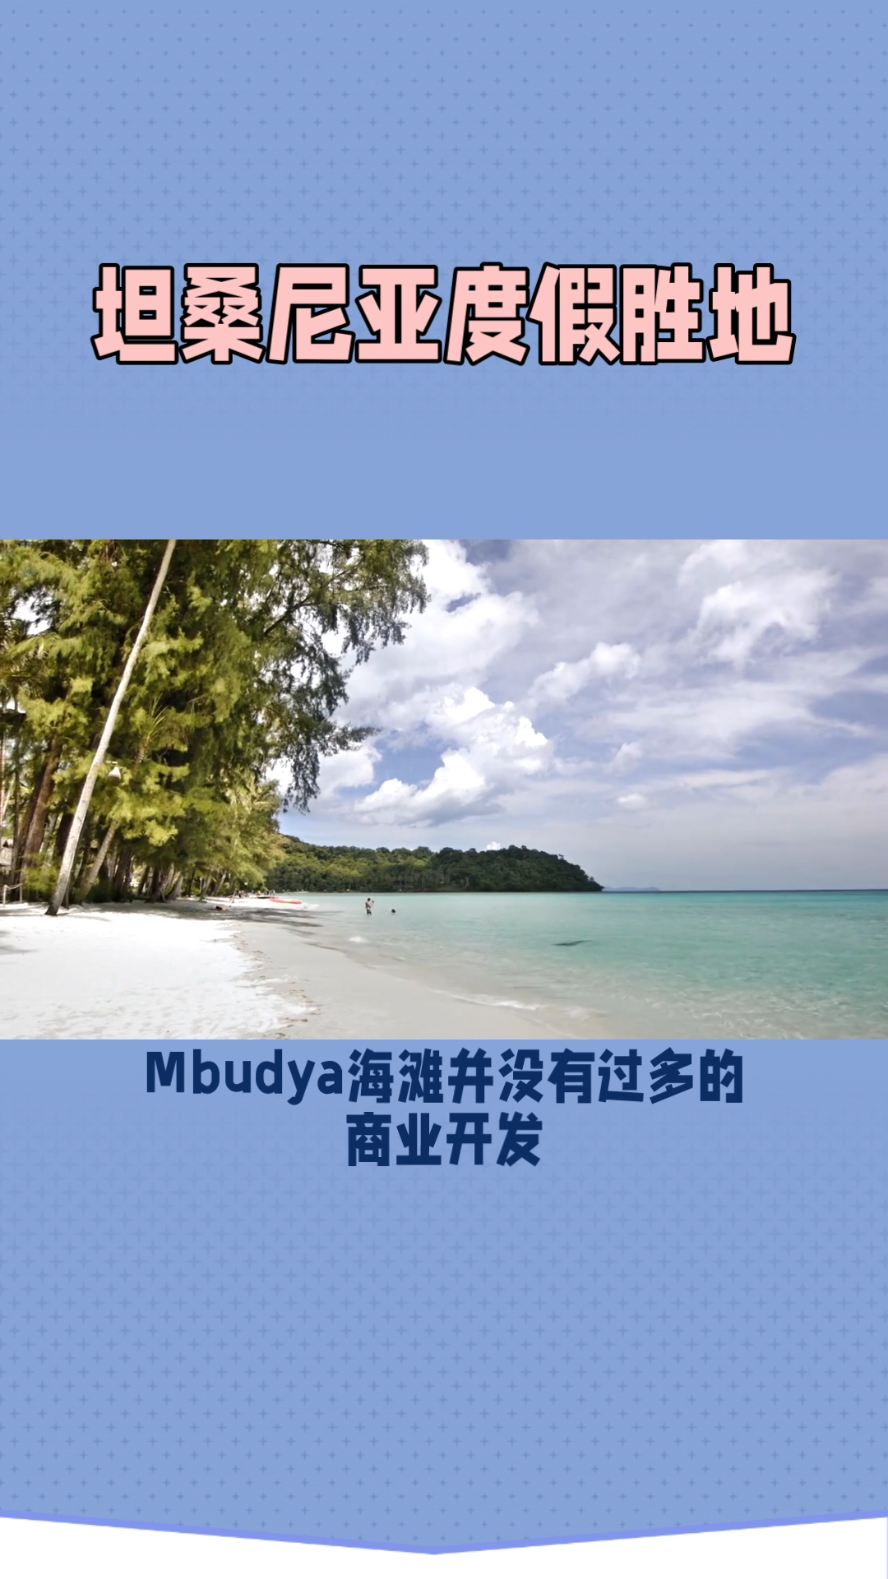 Mbudya海滩